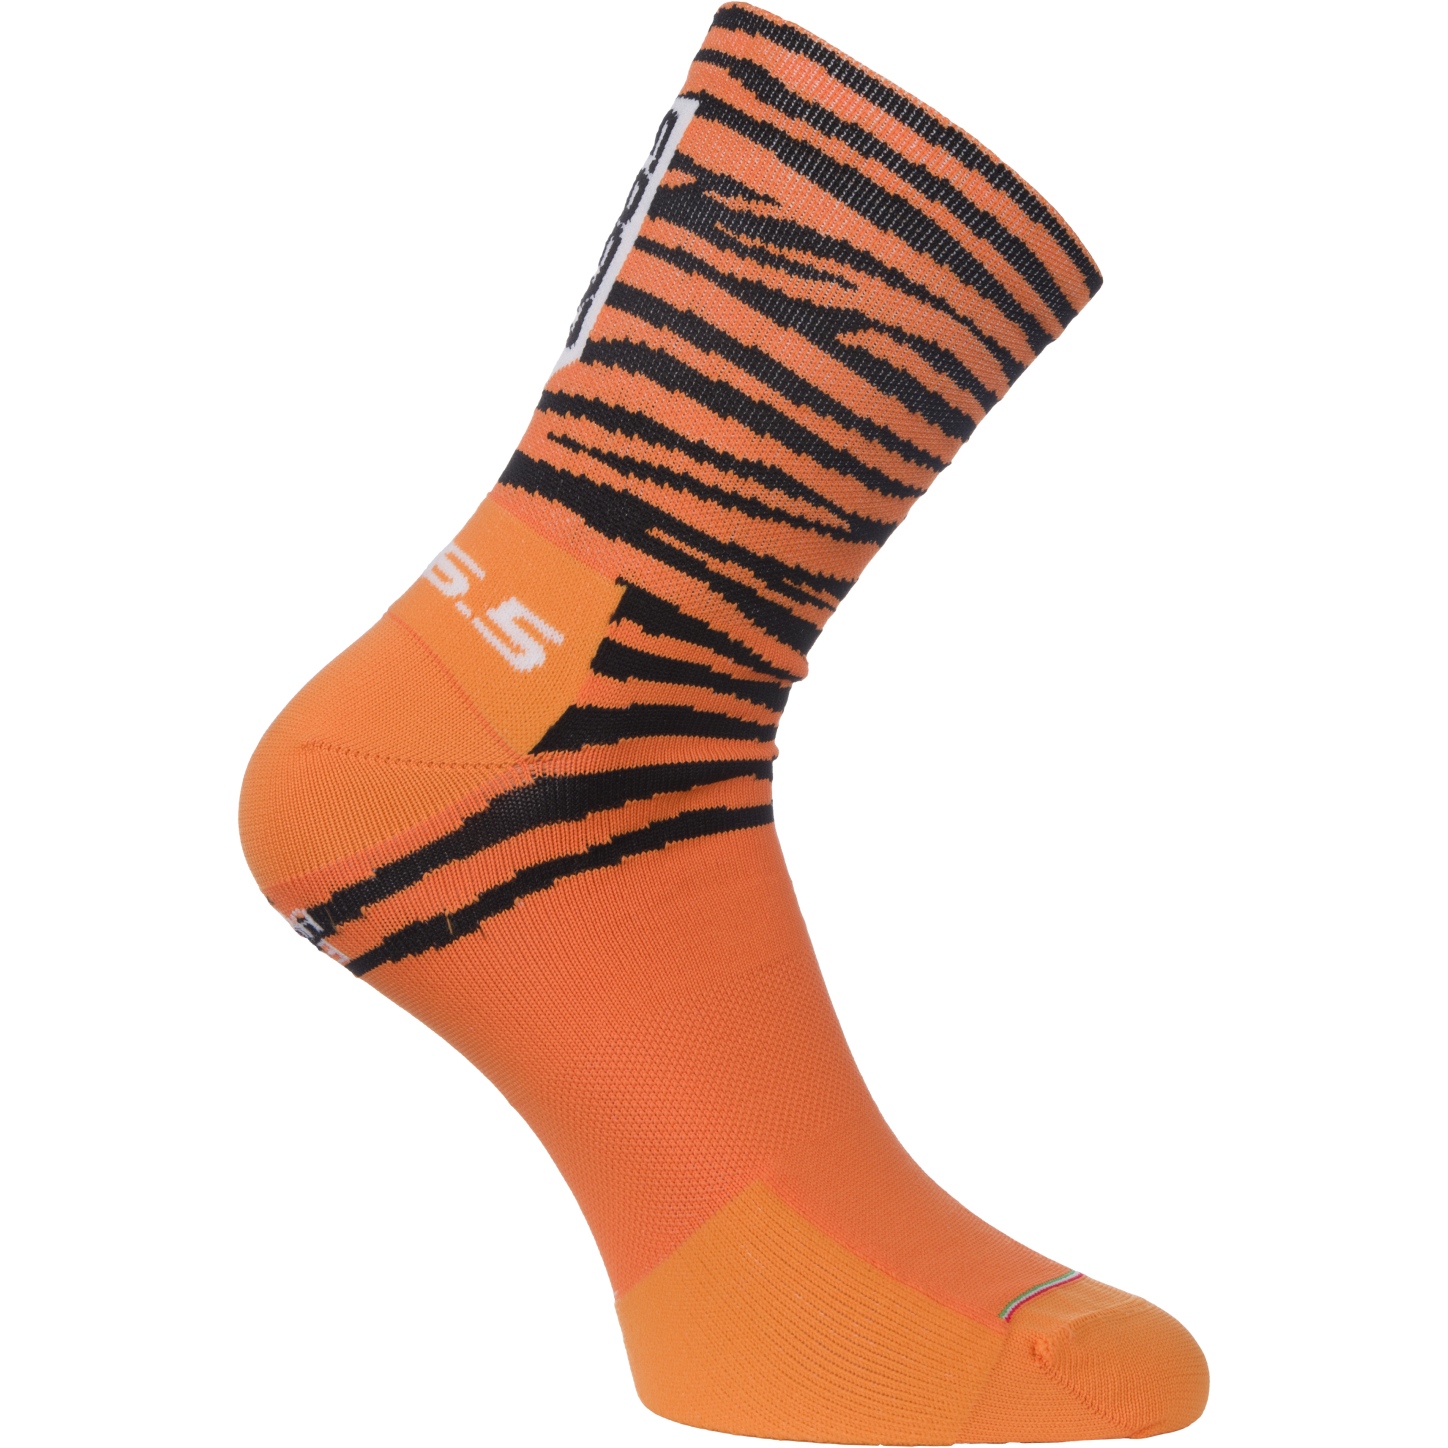 Produktbild von Q36.5 Ultra Socken - tiger orange